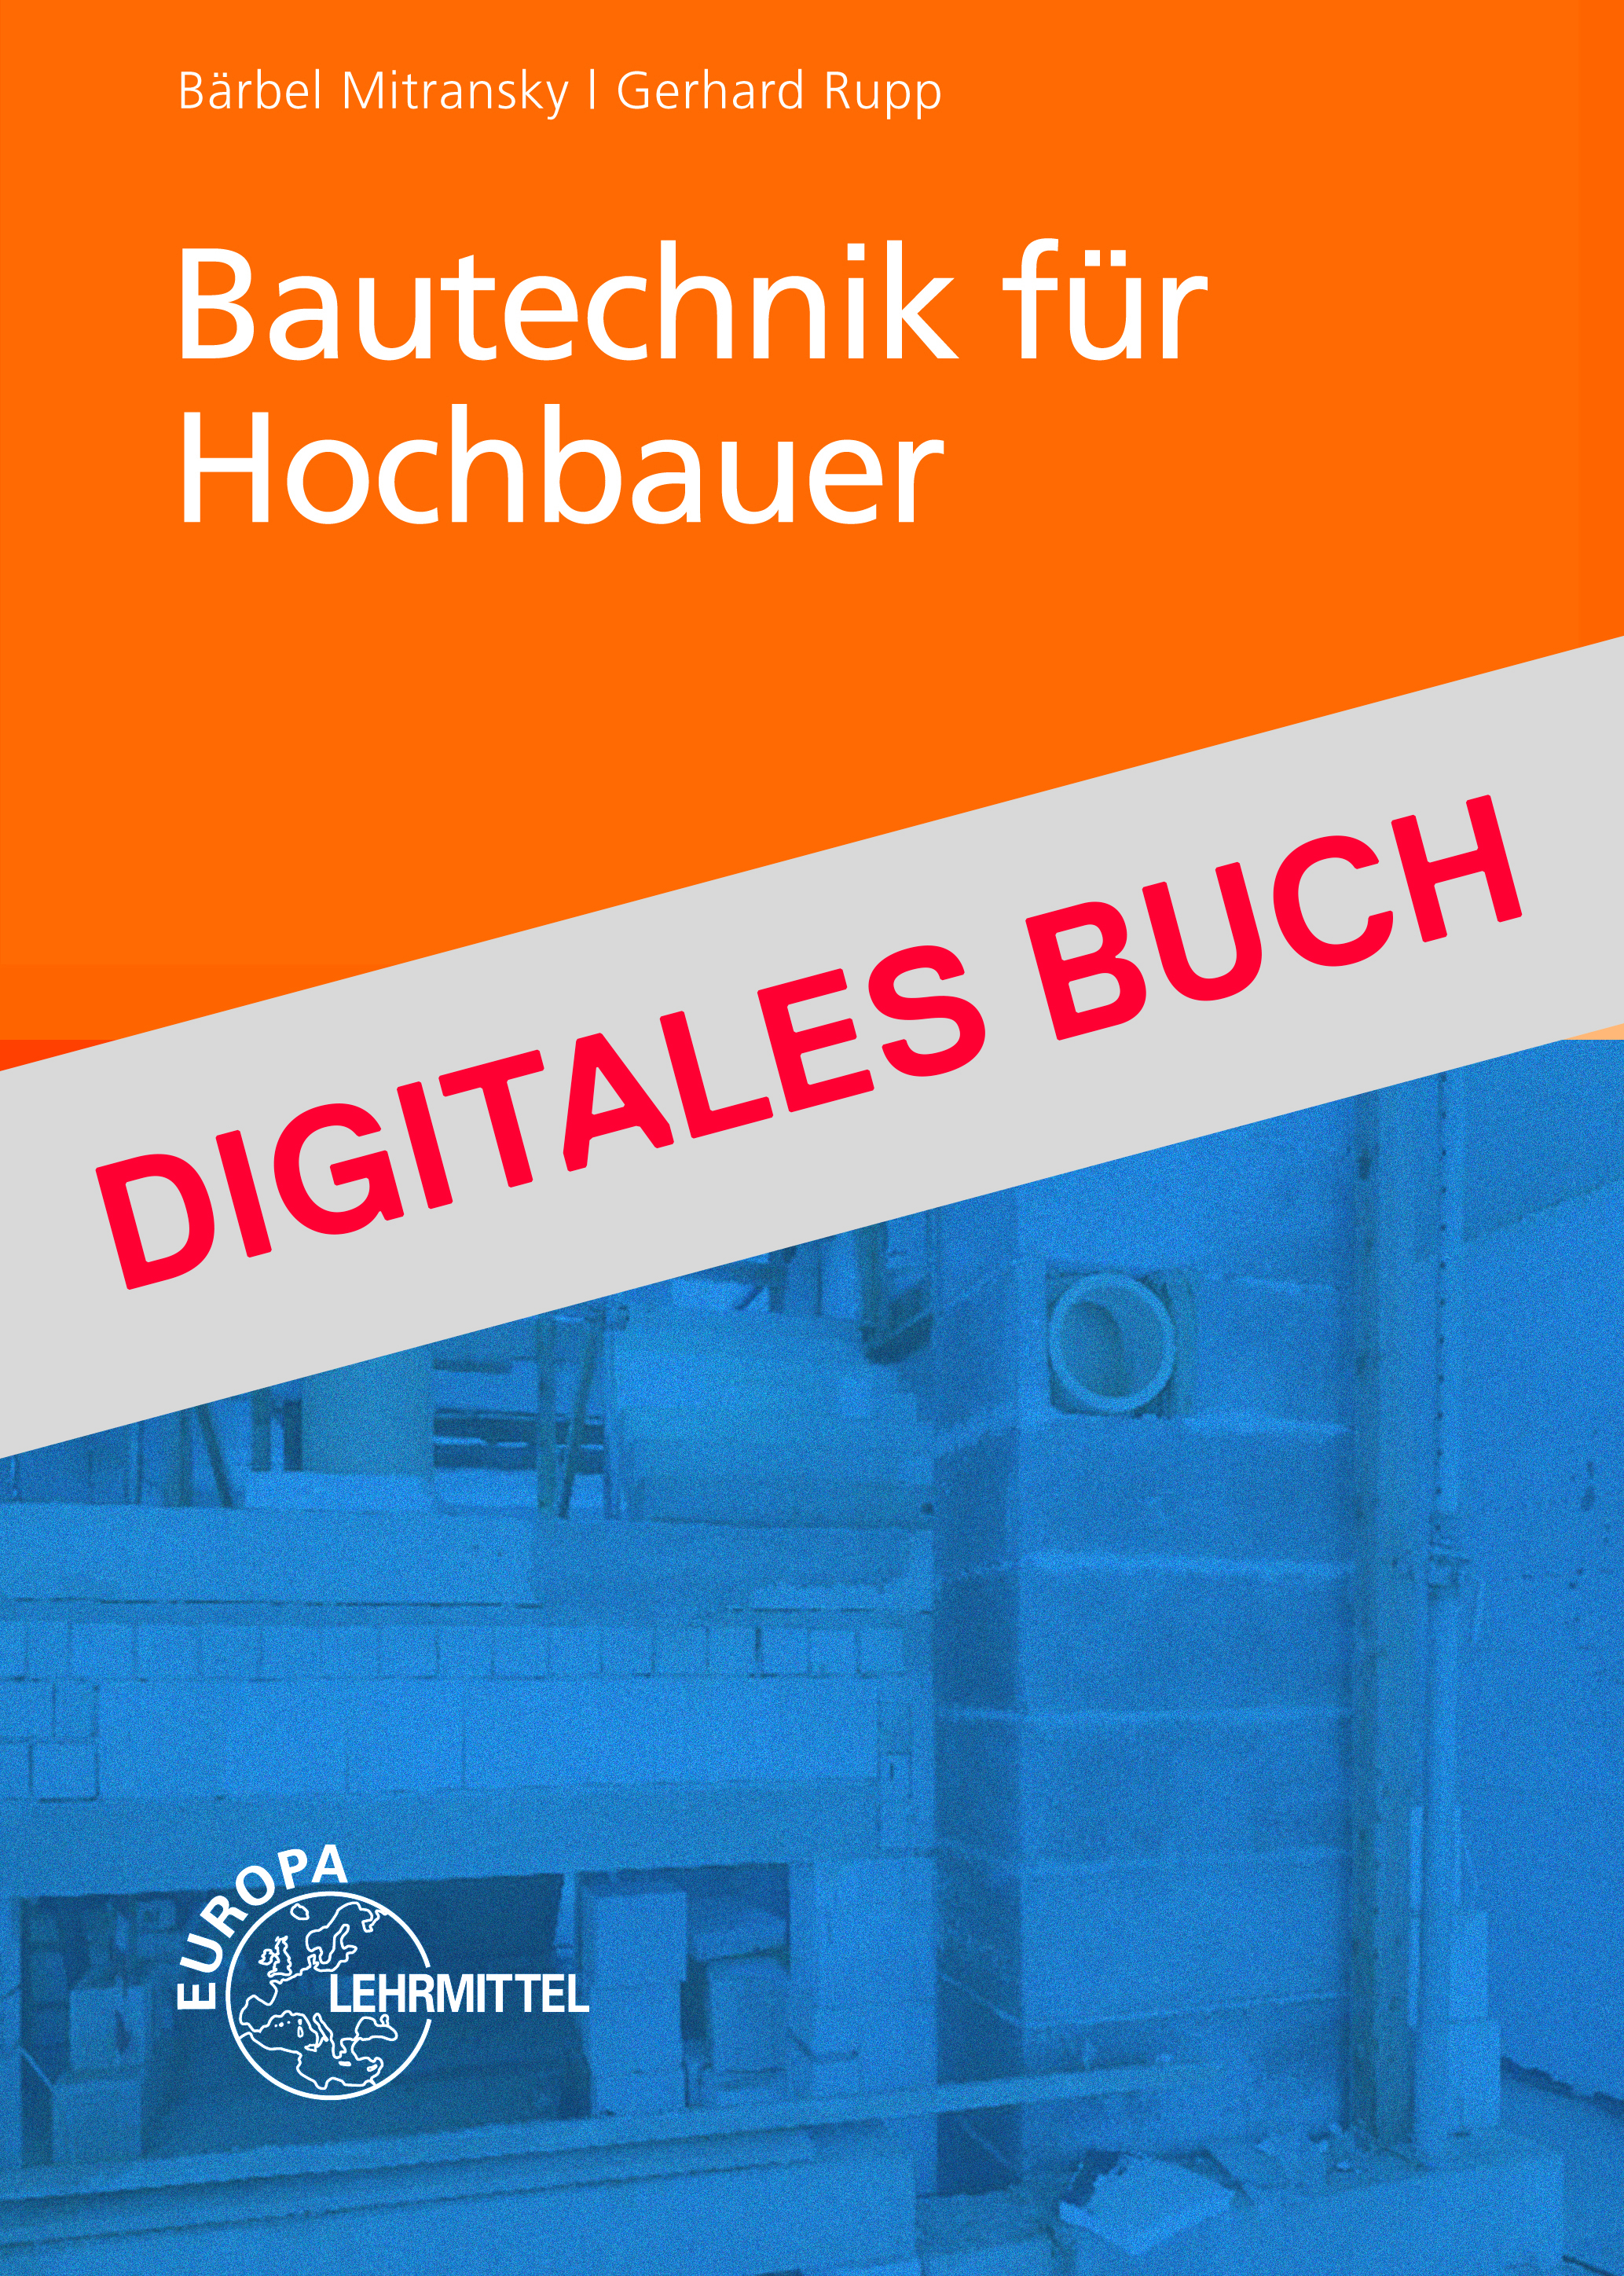 Bautechnik für Hochbauer - Digitales Buch